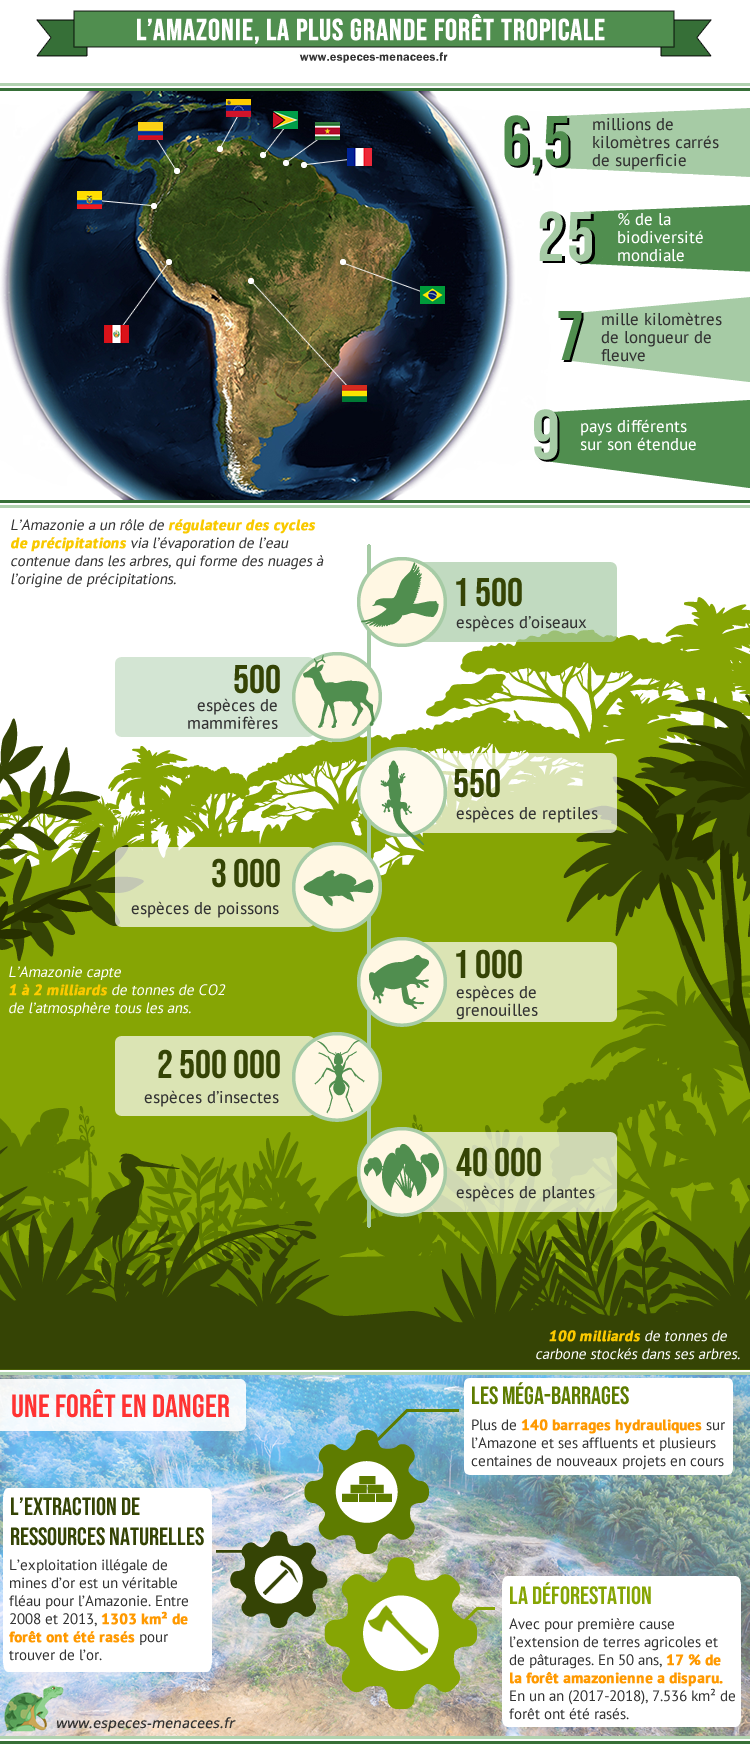 Amazonie, biodiversité et rôle climatique